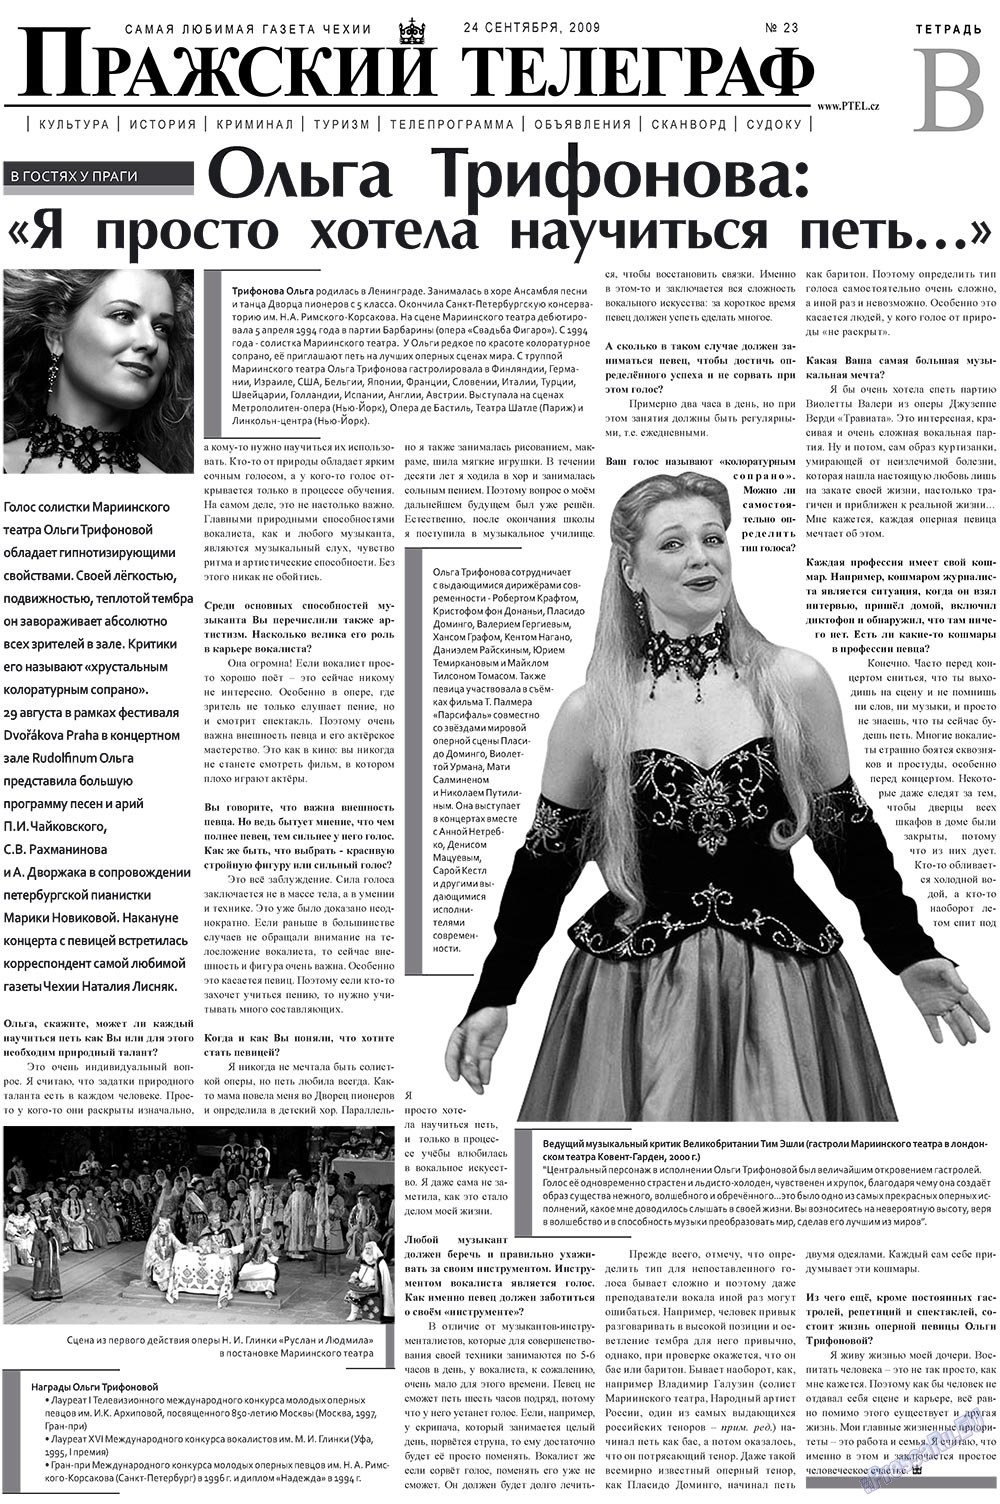 Prazhski telegraf (Zeitung). 2009 Jahr, Ausgabe 23, Seite 9